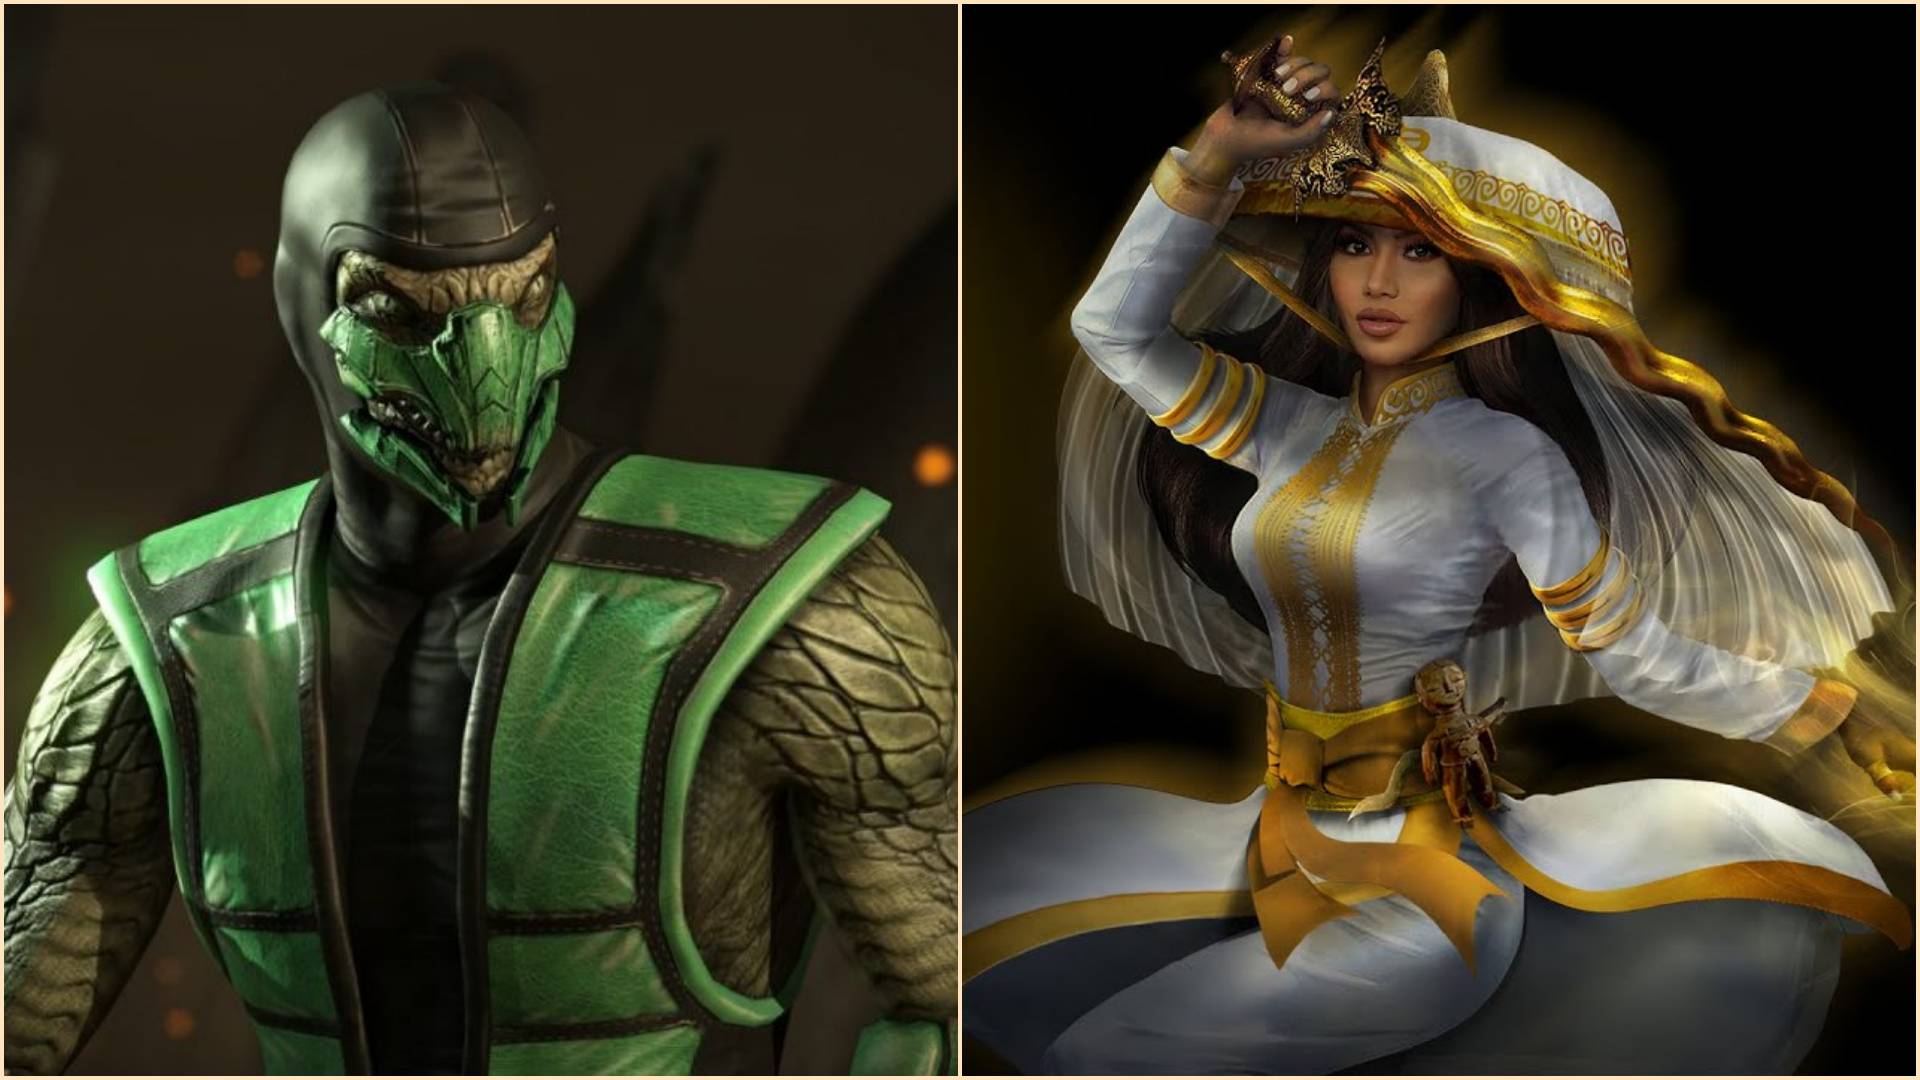 Mortal Kombat 1: Todos os personagens principais, kameos e DLCs confirmados  no elenco